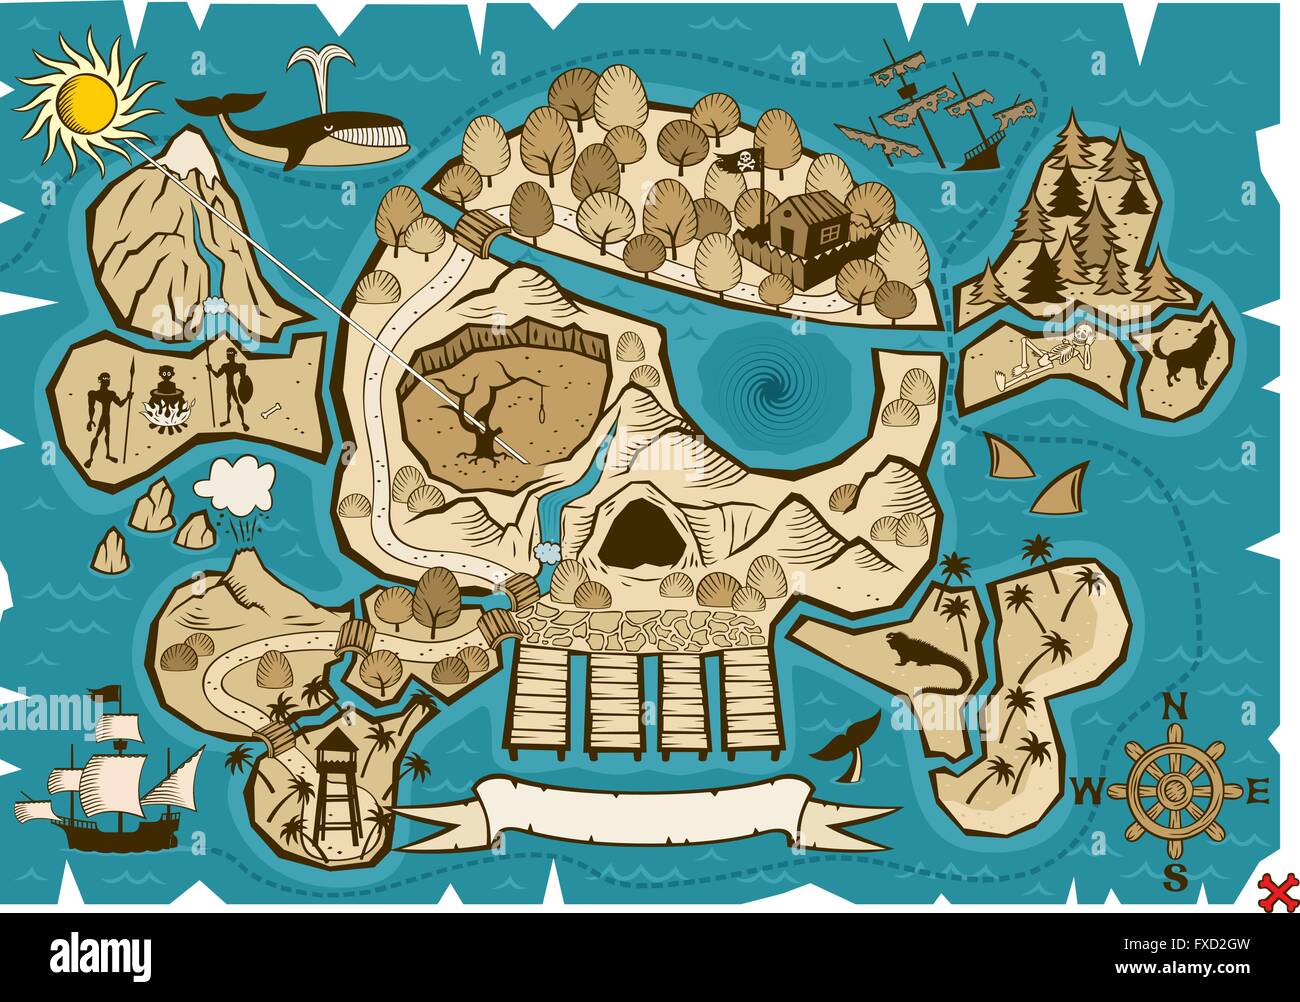 Carte de l'île au trésor en forme de crâne et os. Utiliser le X dans le coin inférieur droit pour marquer la place du trésor. Illustration de Vecteur